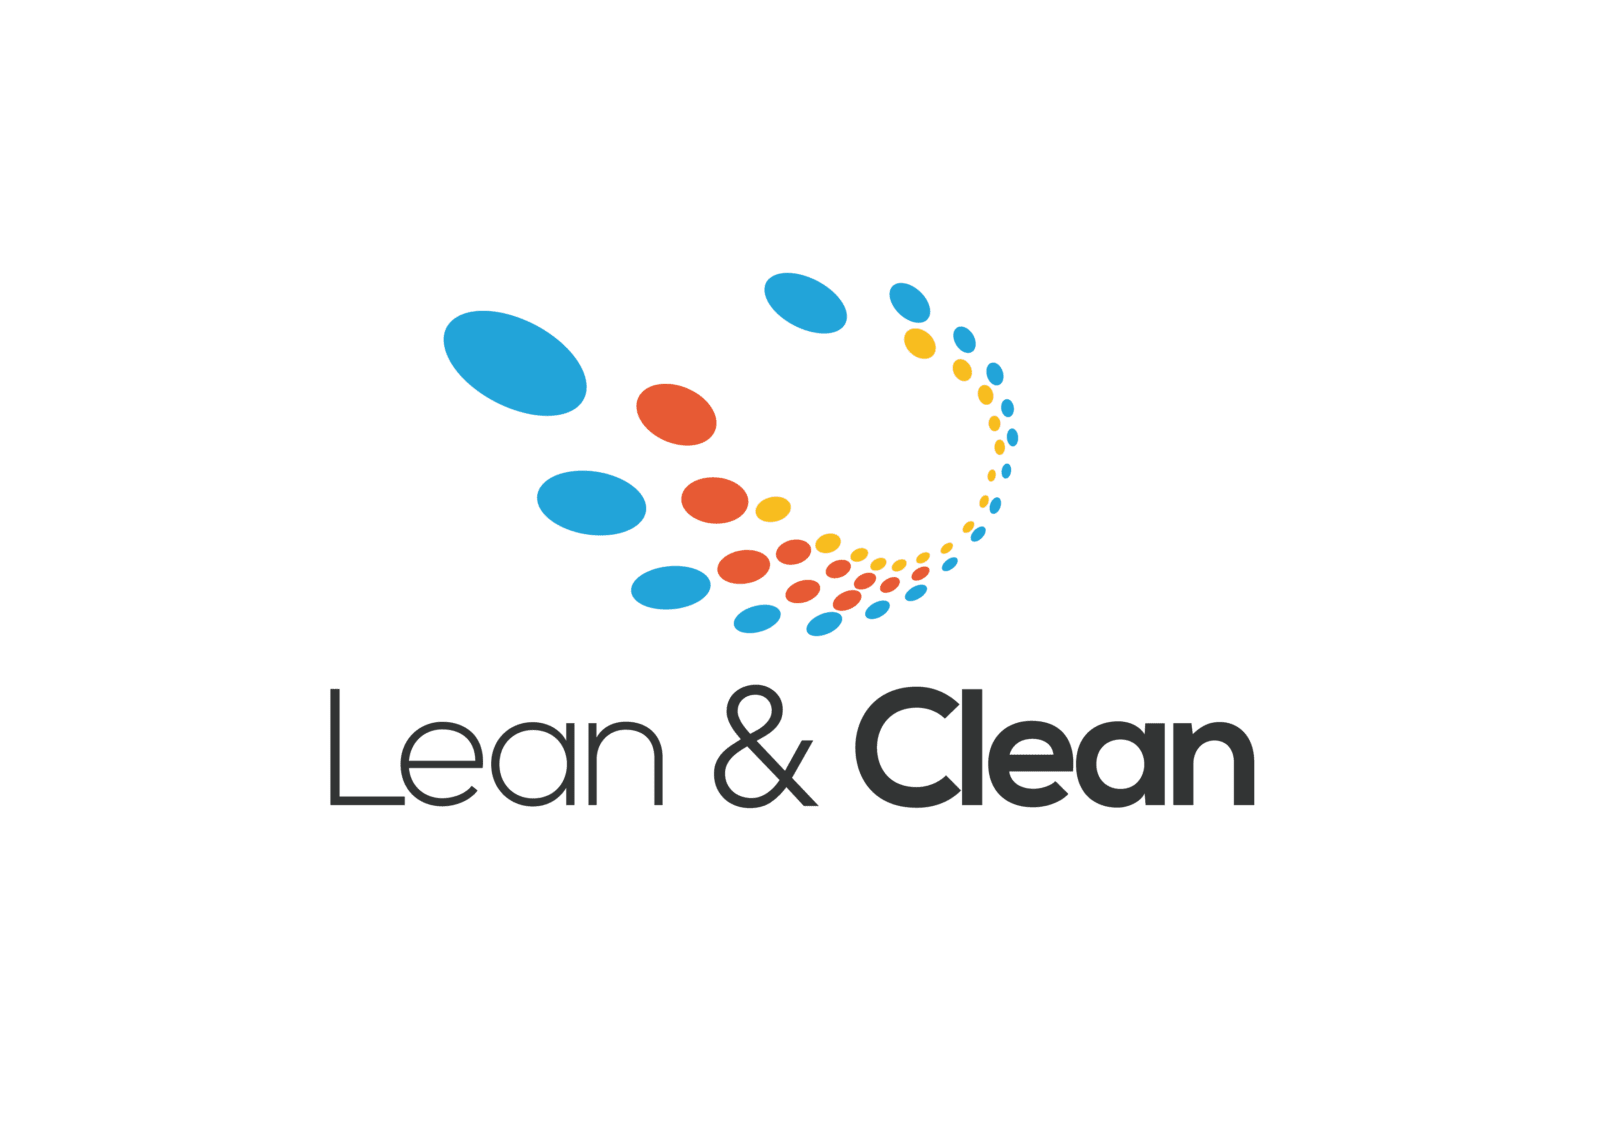 Lean & Clean